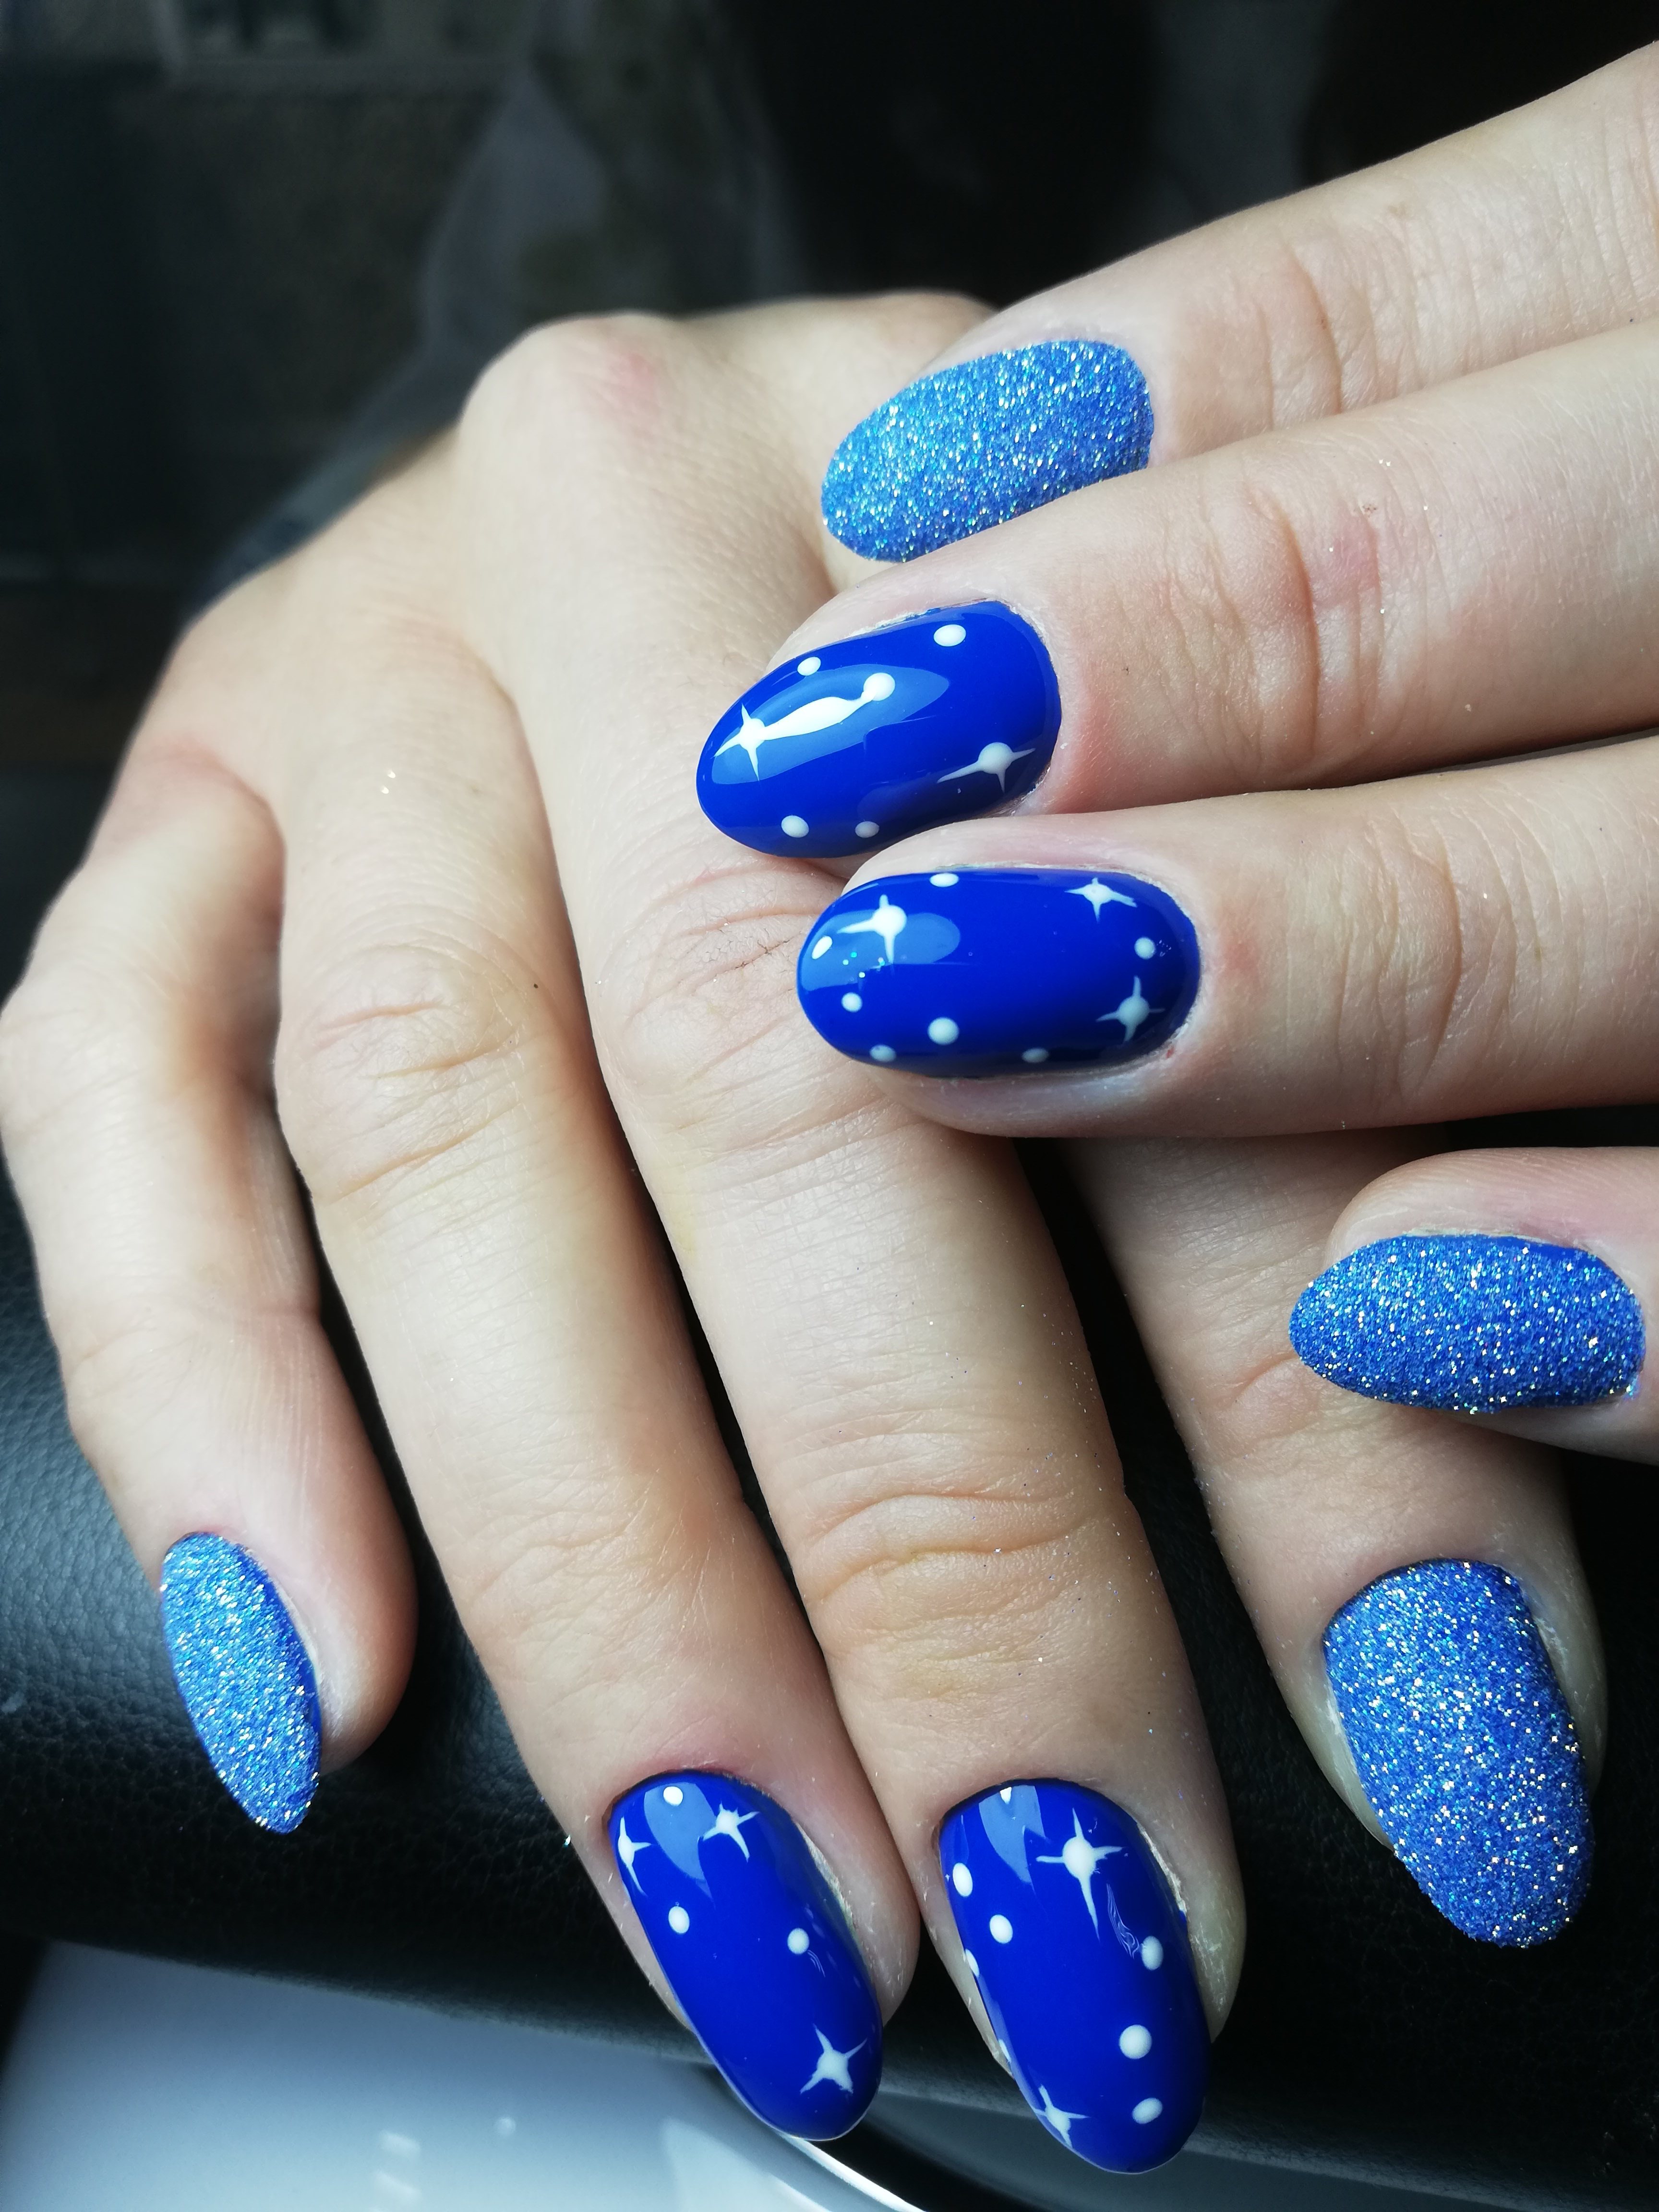 Маникюр в синем цвете с песочным дизайном и рисунком "звёздочки".